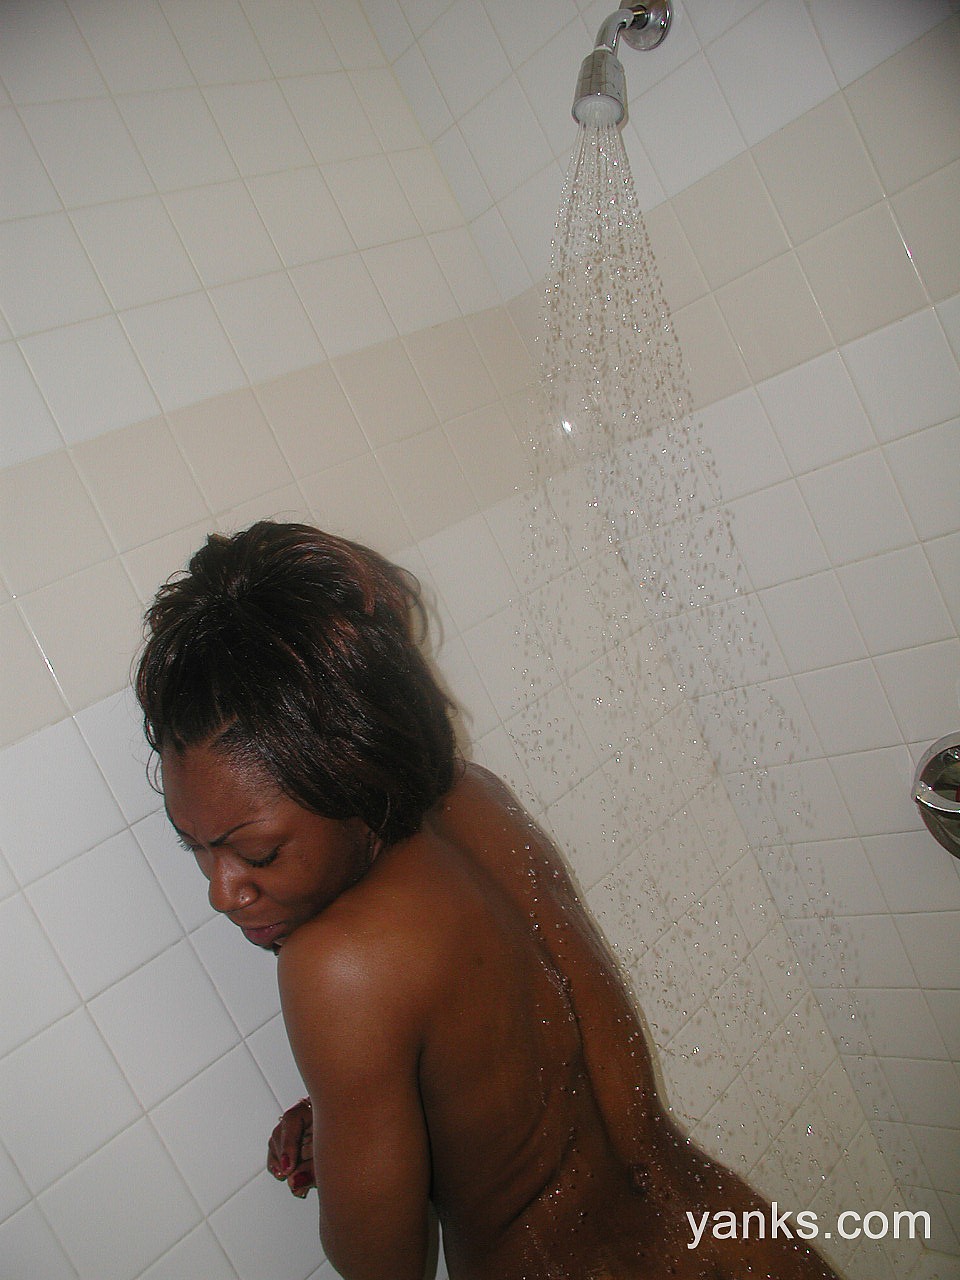 Dirty ebony Colette shows her love hole and tiny tits in a bathtub zdjęcie porno #426566571 | Yanks Pics, Colette, Ebony, mobilne porno